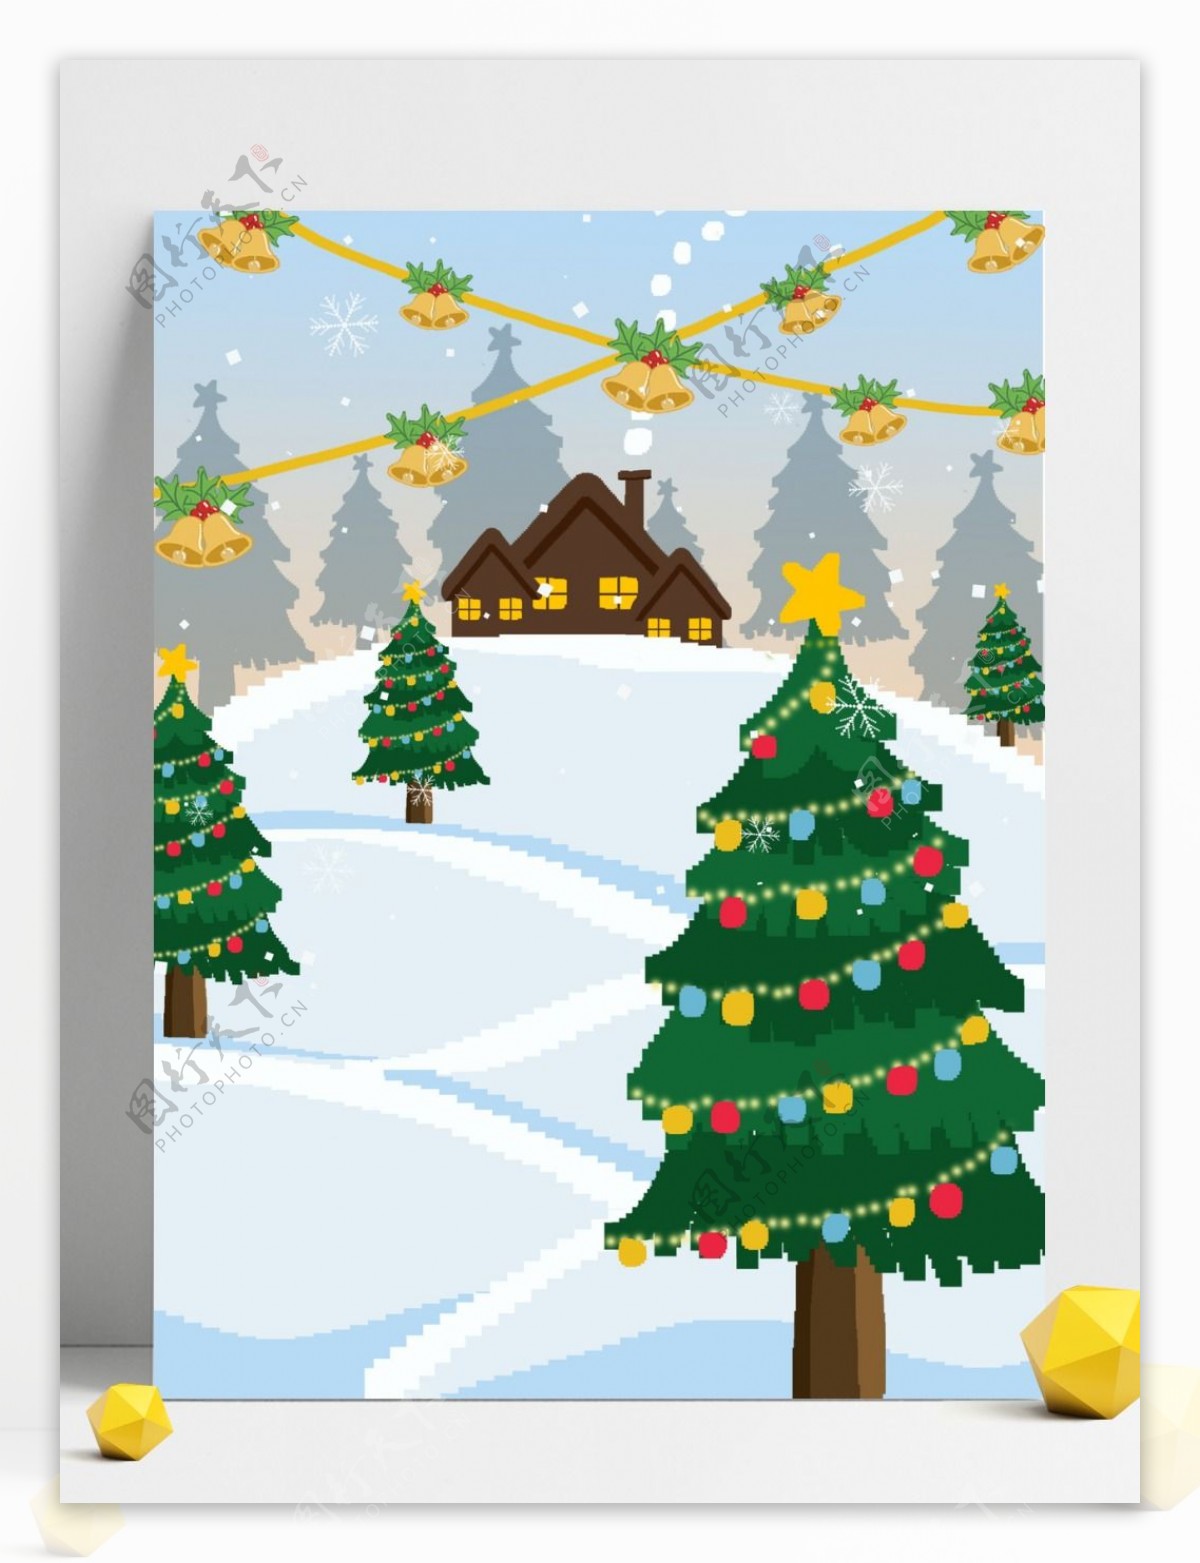 手绘冬季雪地圣诞树背景设计